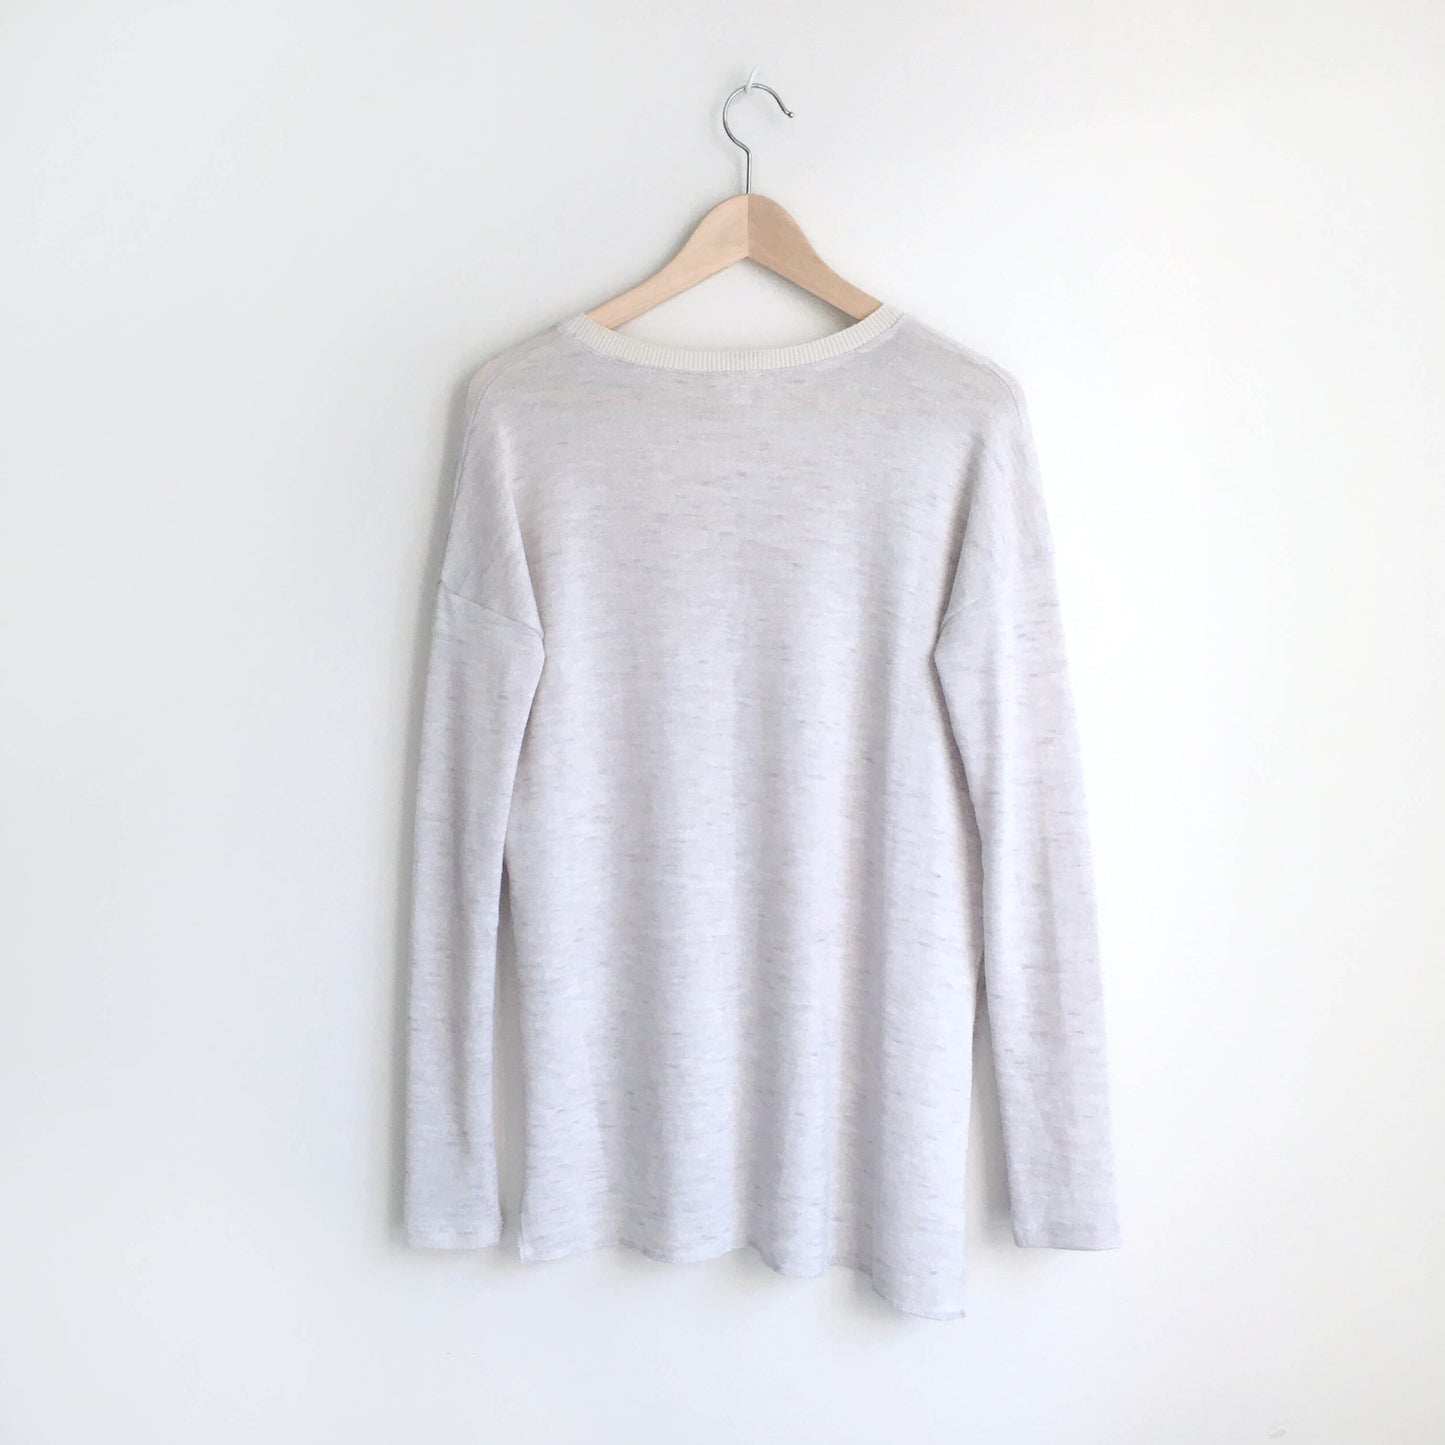 Wilfred Sherbrooke Knit Shirt - size xs